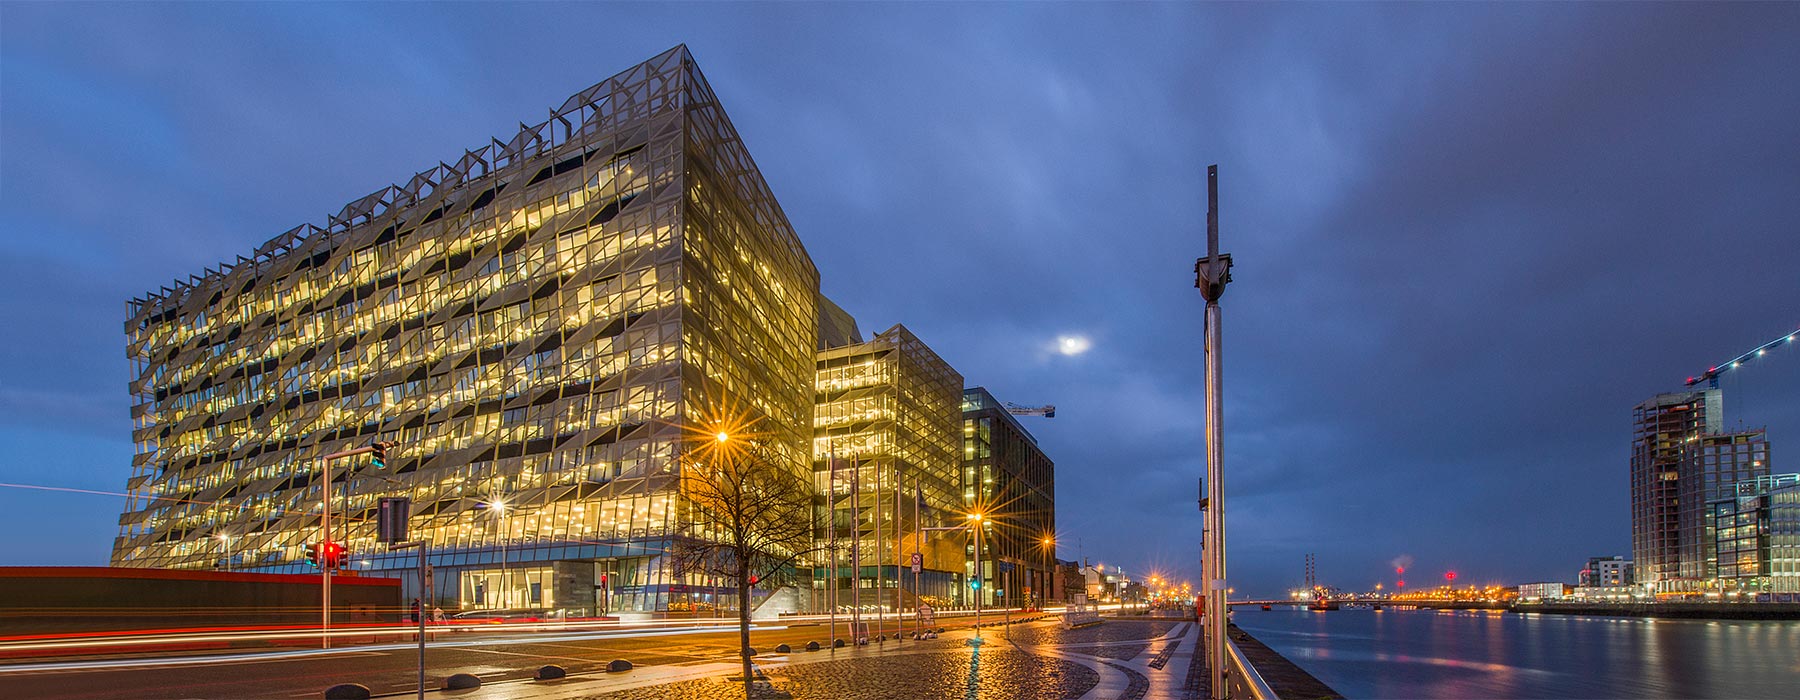 Central Bank of Ireland, Dublin